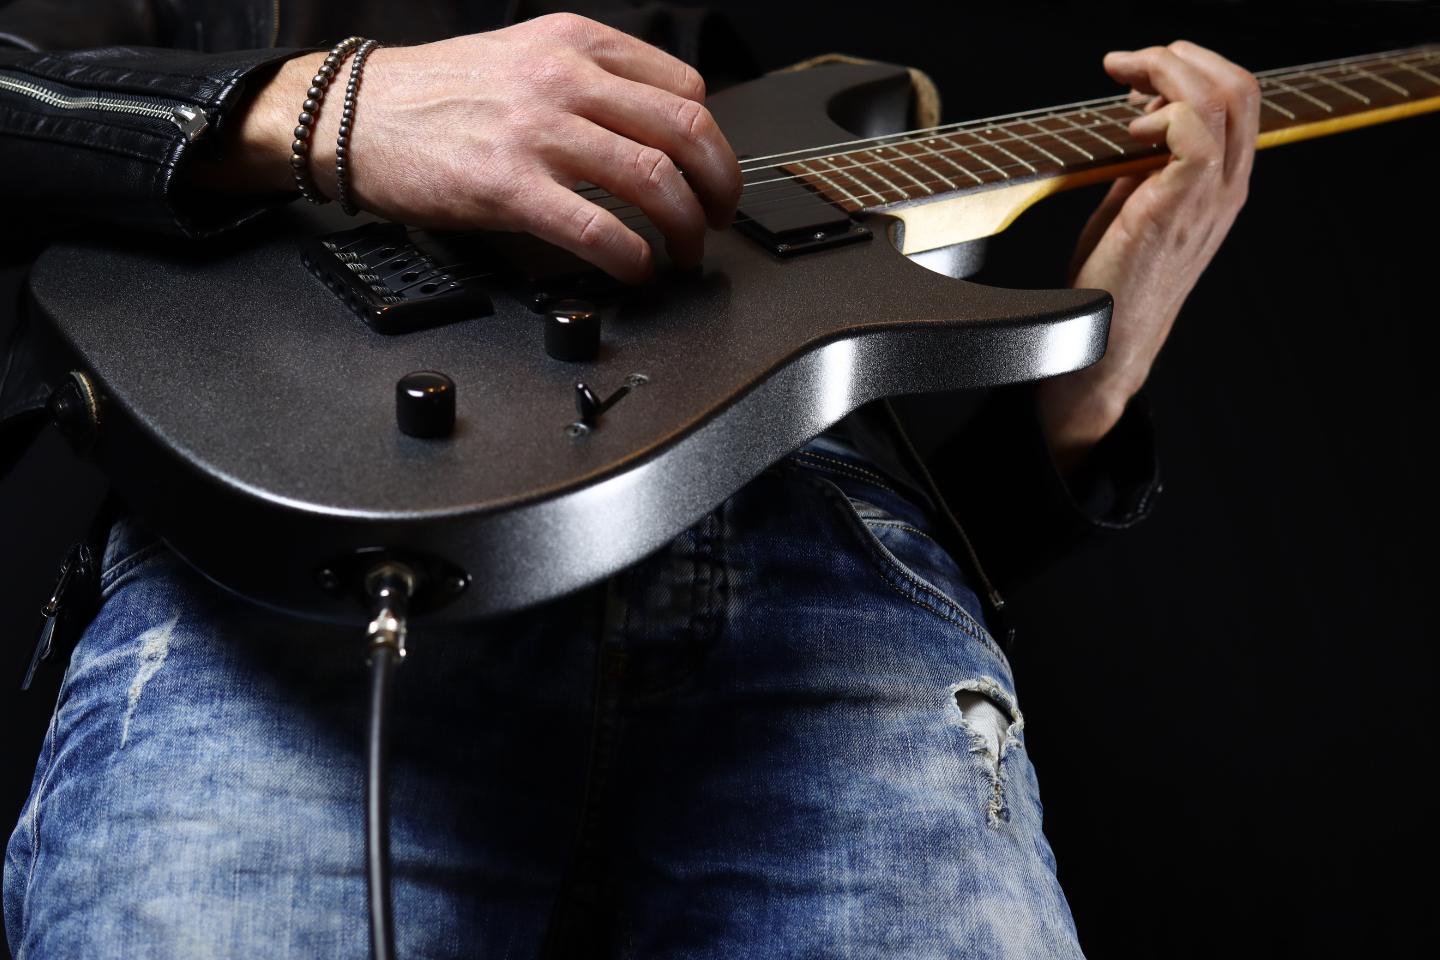 Tipo de Música tocada pela guitarra eletrica influencia na troca das cordas